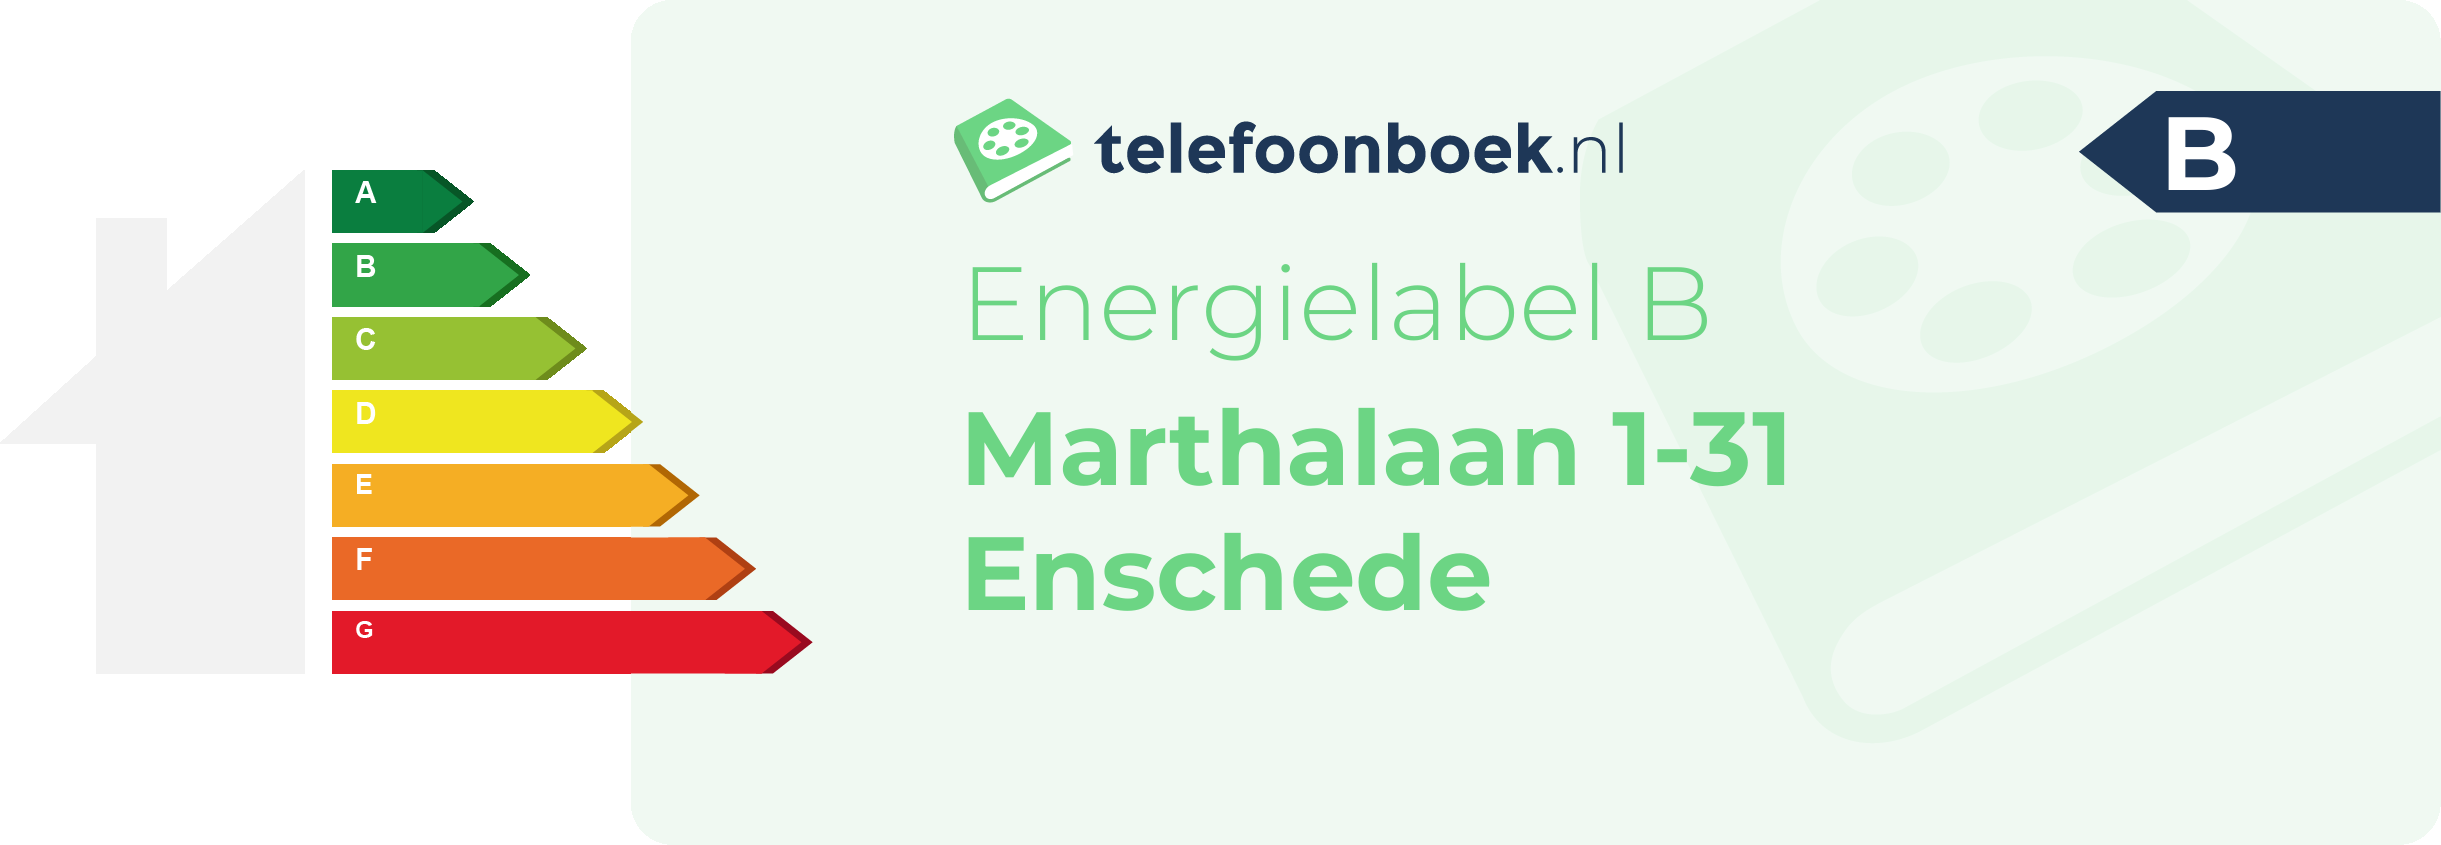 Energielabel Marthalaan 1-31 Enschede